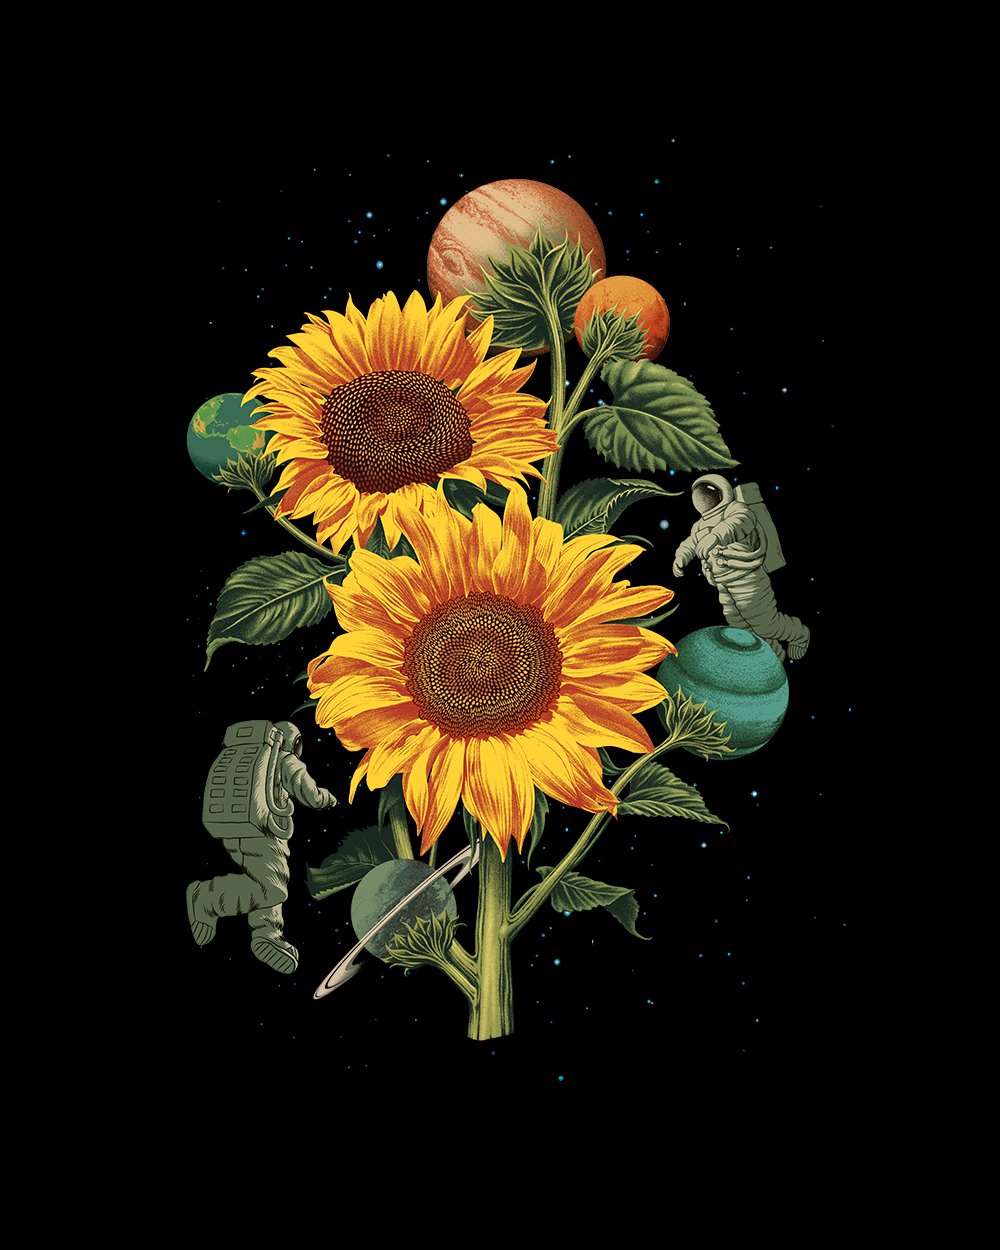 Sun Flowers T-Shirt Europe Online #colour_black